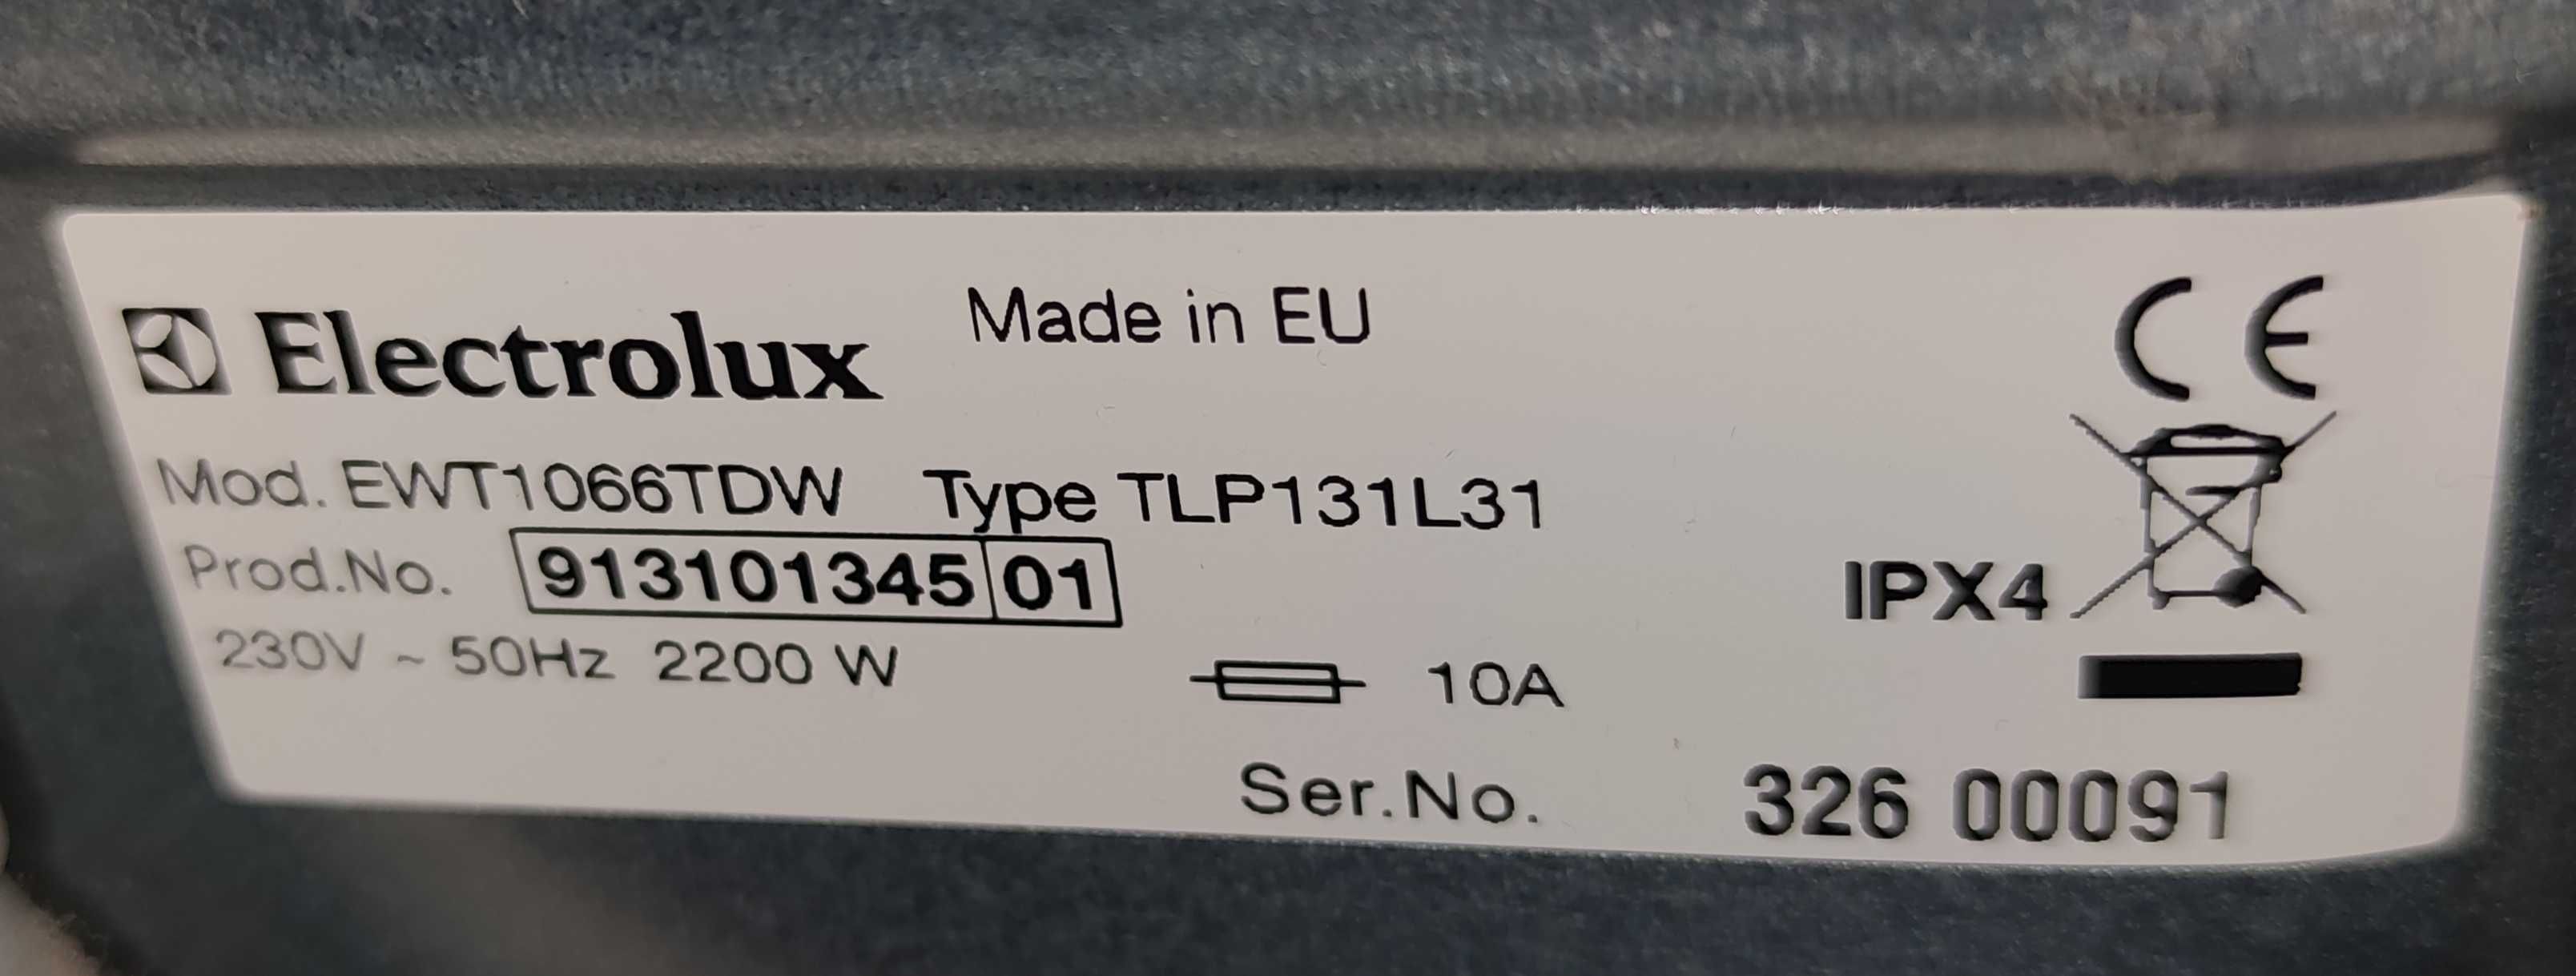 electrolux ewt1066tdw części moduł wyświetlacza, silnik